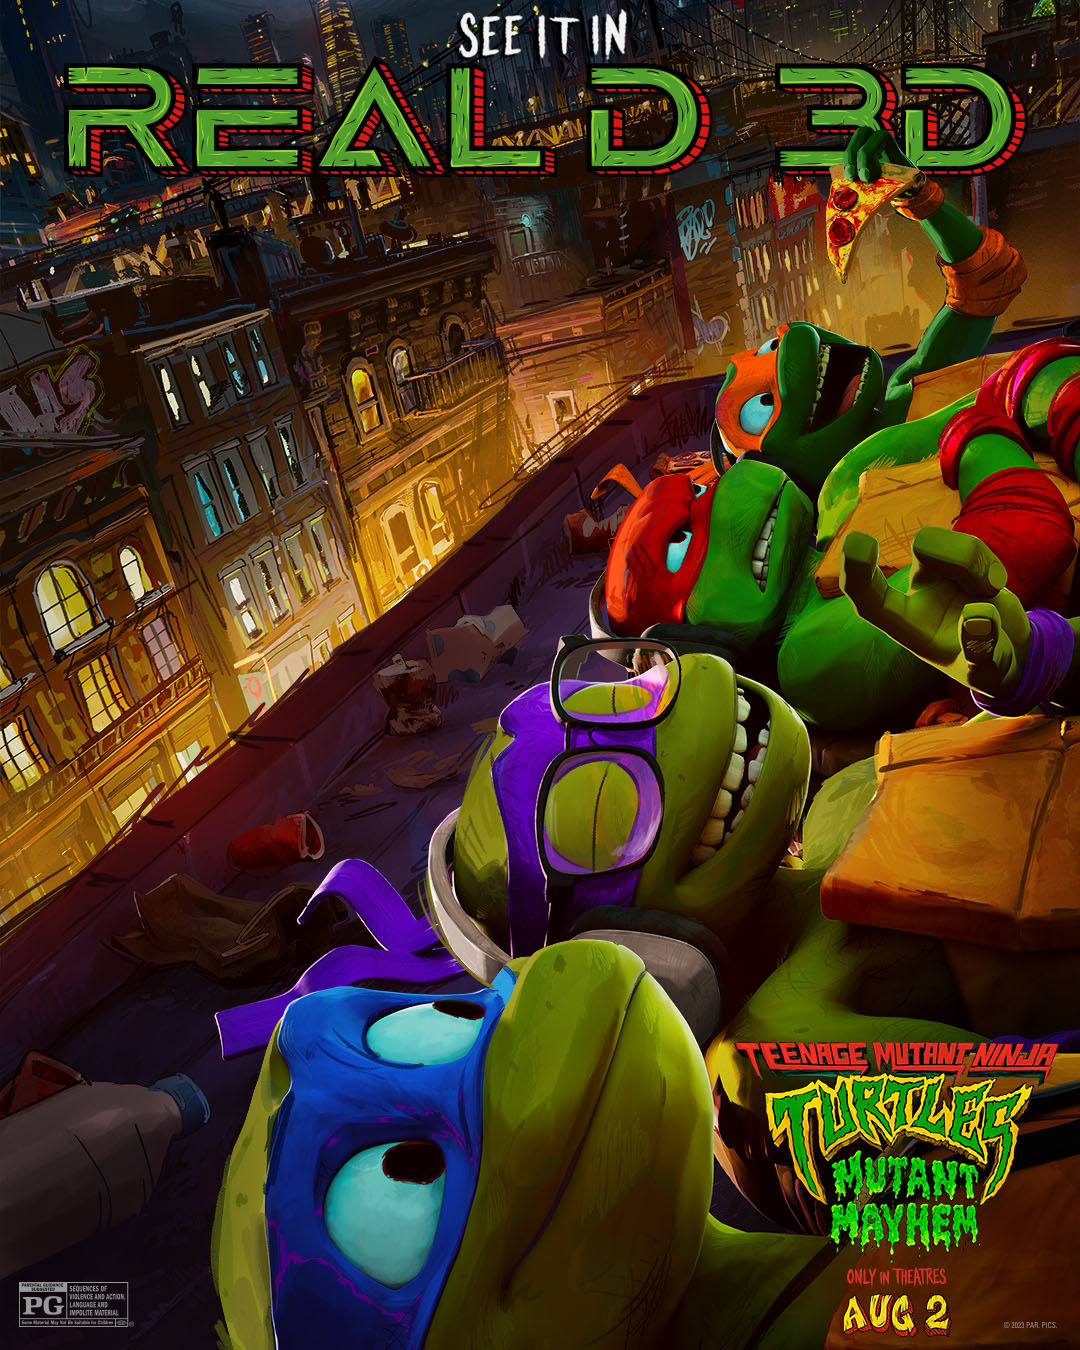 Extra Large Movie Poster Image for Teenage Mutant Ninja Turtles: Mutant Mayhem (#38 of 48)